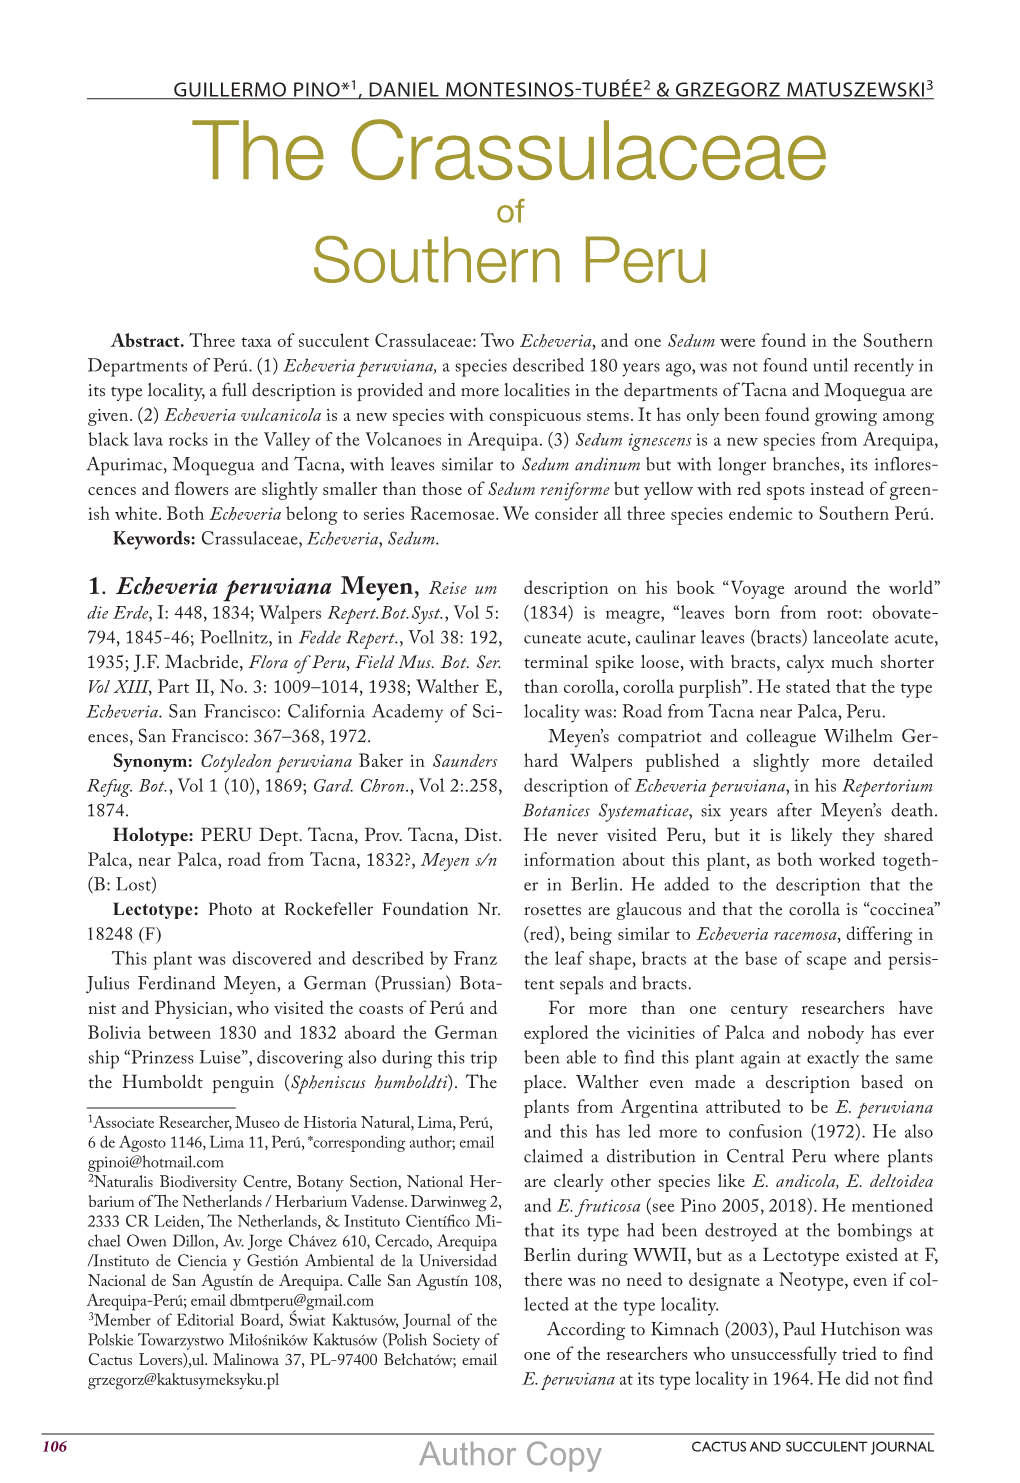 The Crassulaceae of Southern Peru